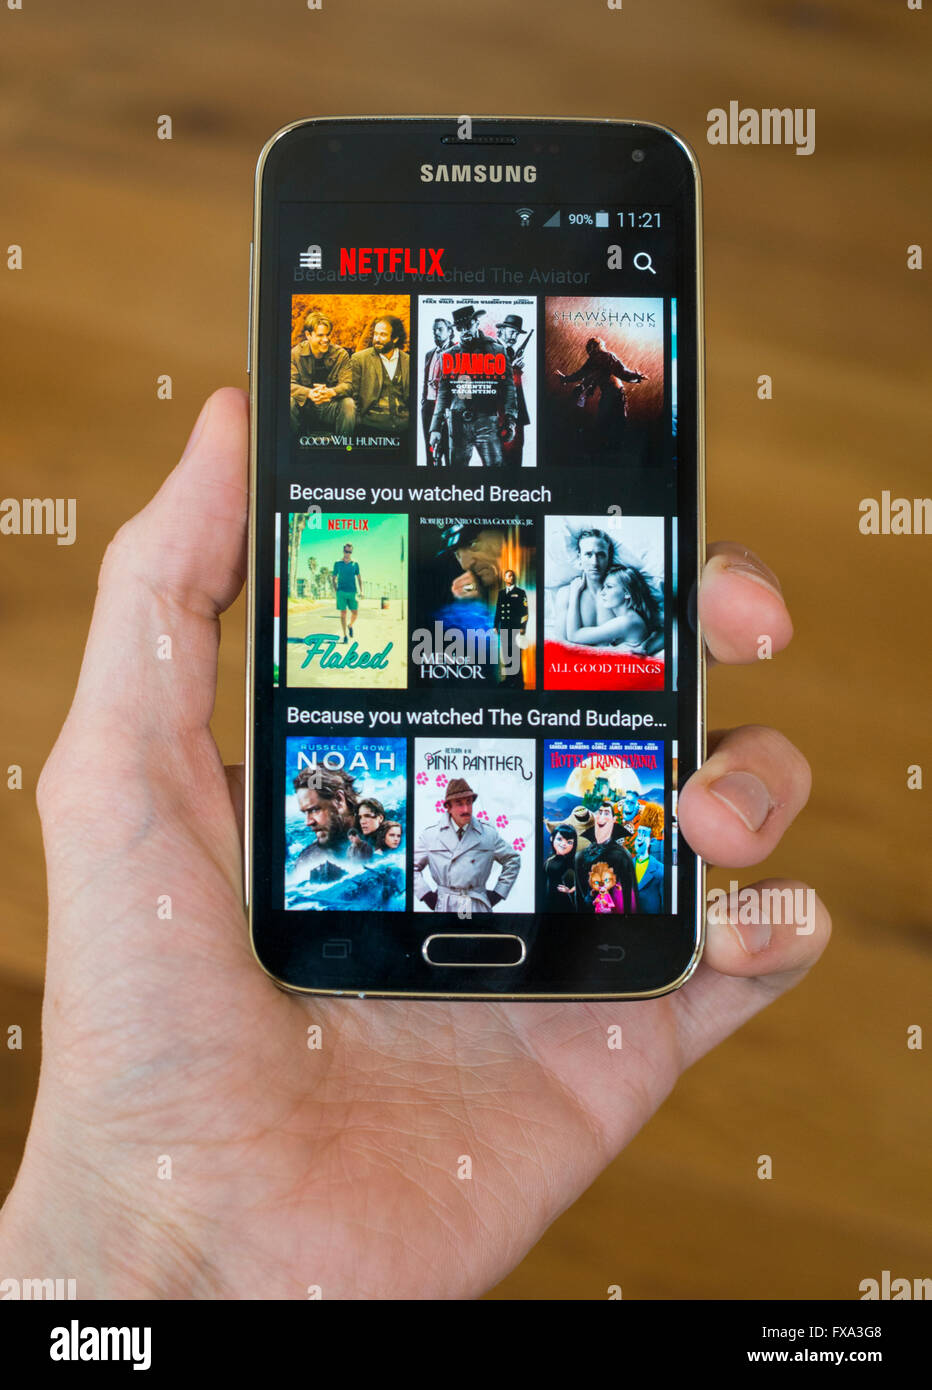 Una mano che tiene un Samsung S5 telefono con le app Netlfix aperto e mostra gli spettacoli TV e i film disponibili per guardare. Foto Stock